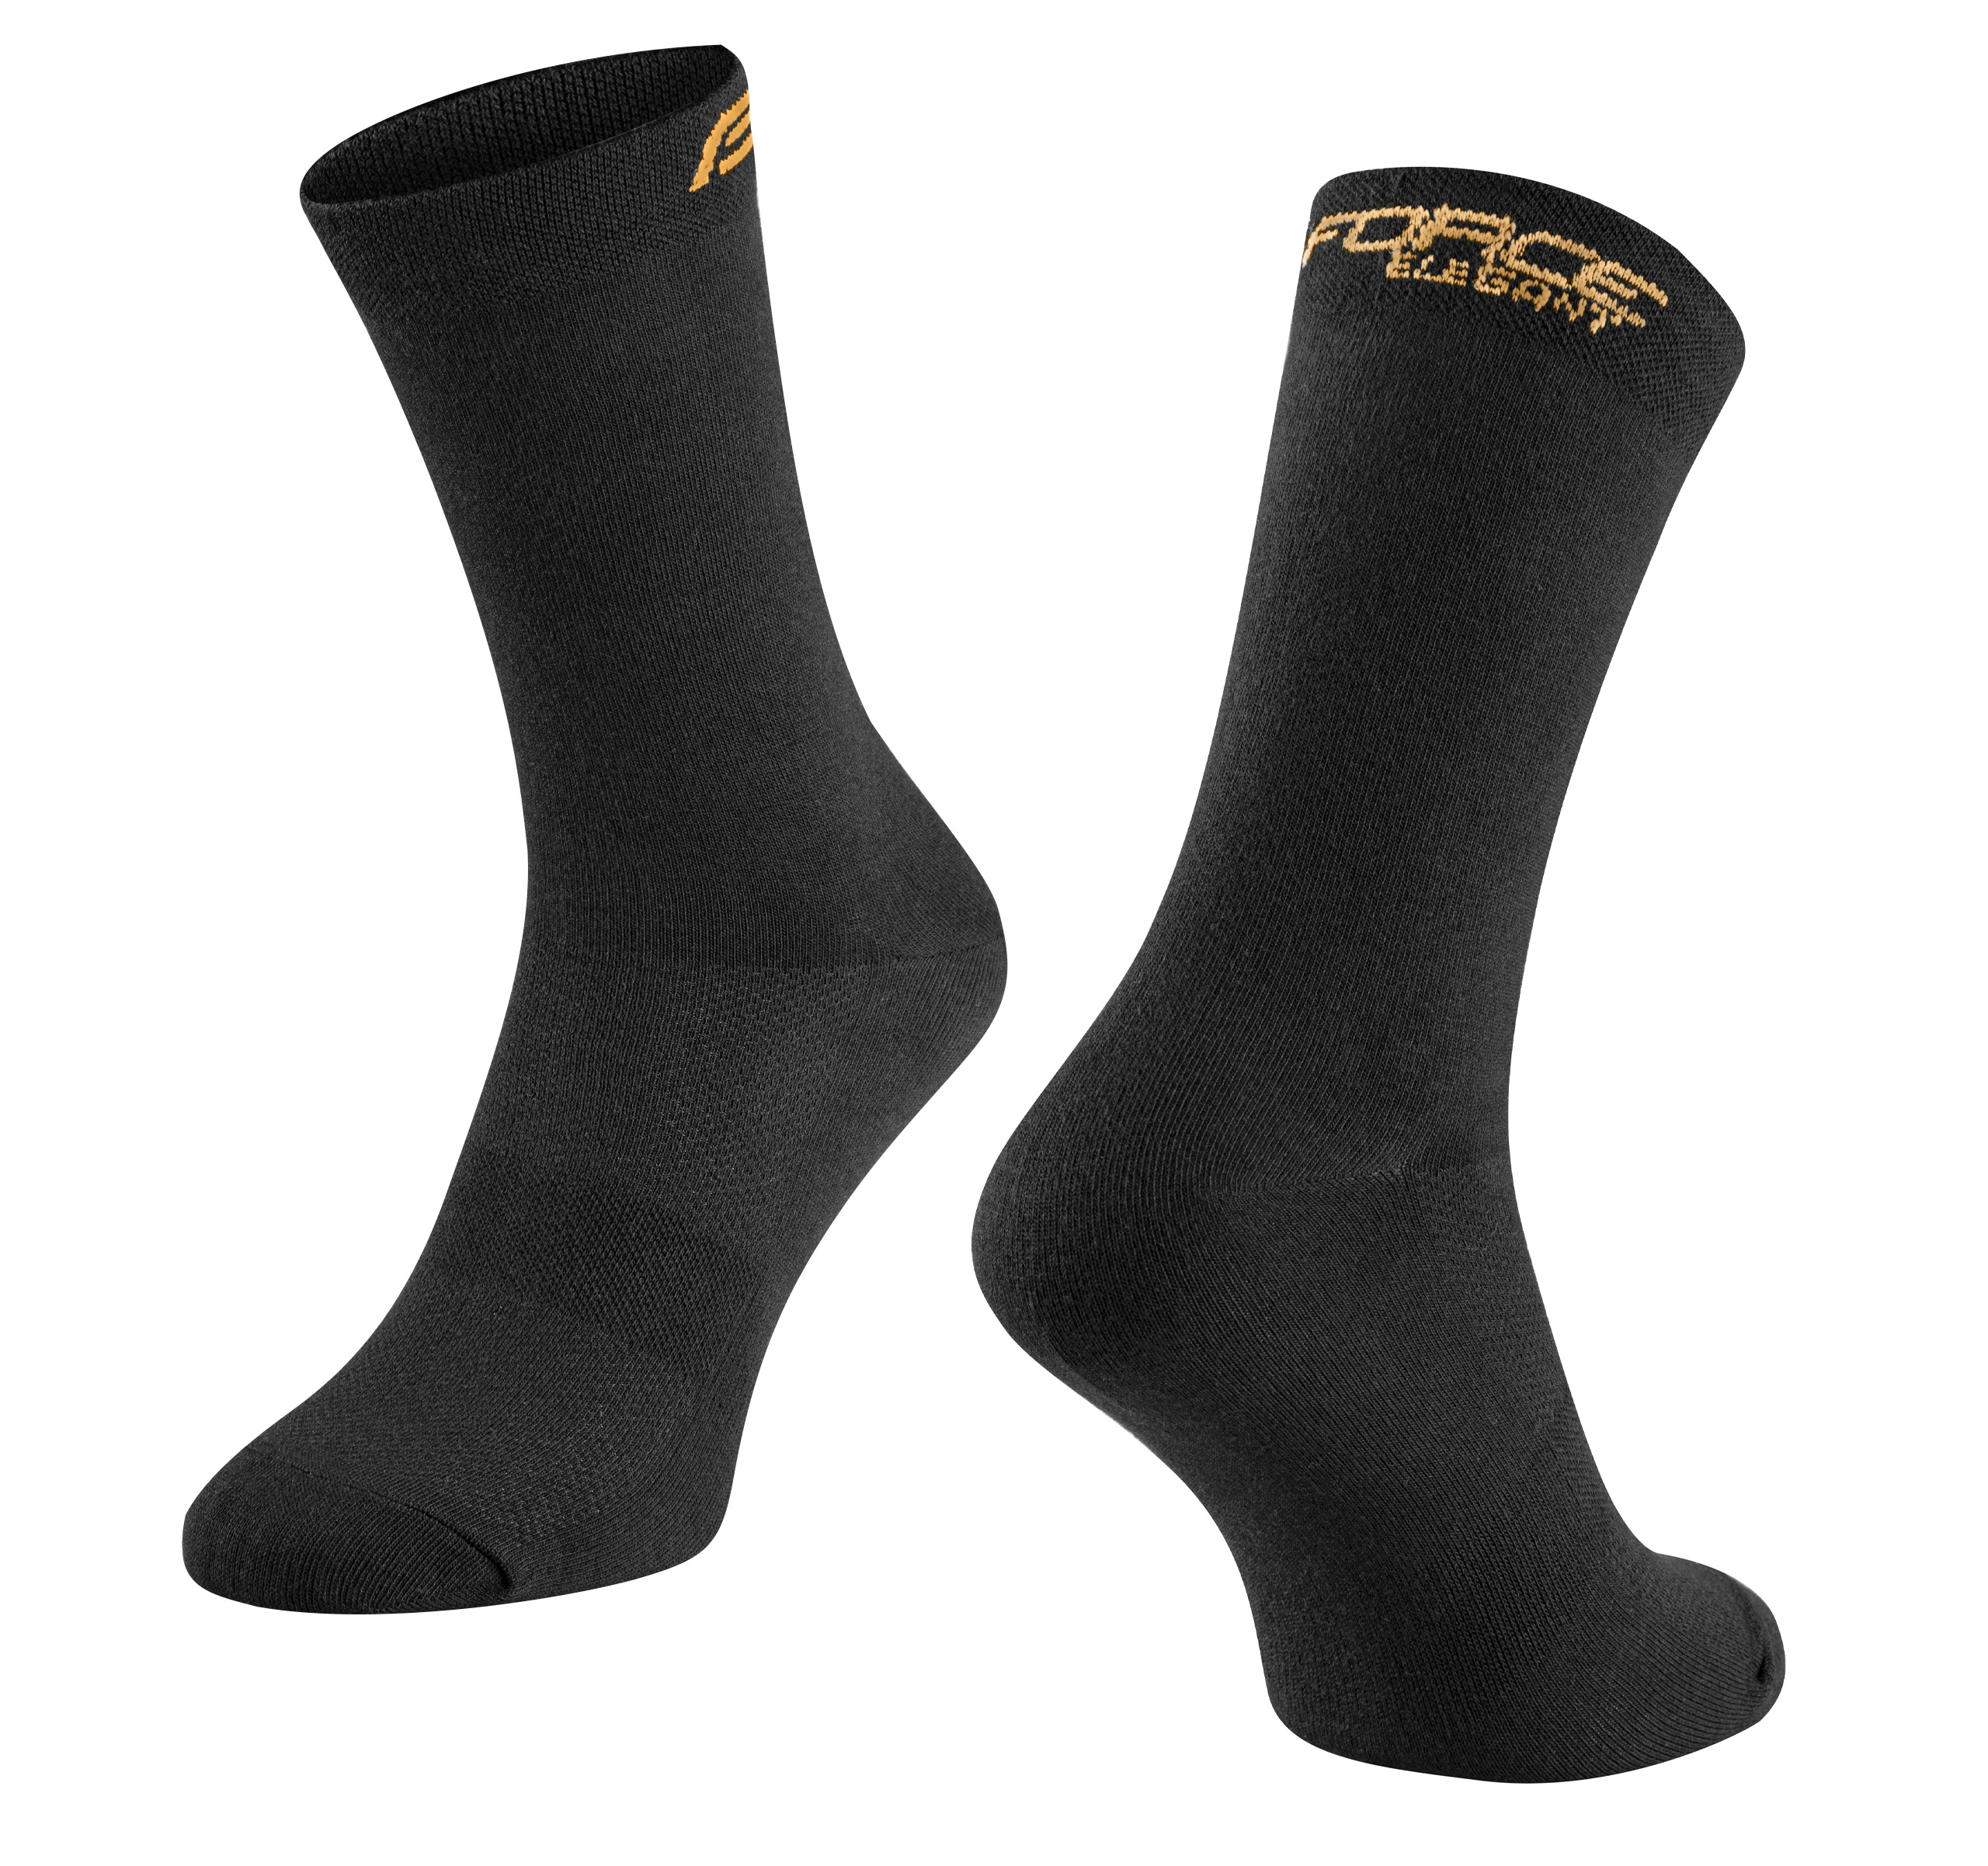 ponožky FORCE ELEGANT vysoké,černo-zlaté S-M/36-41 Velikost: S-M